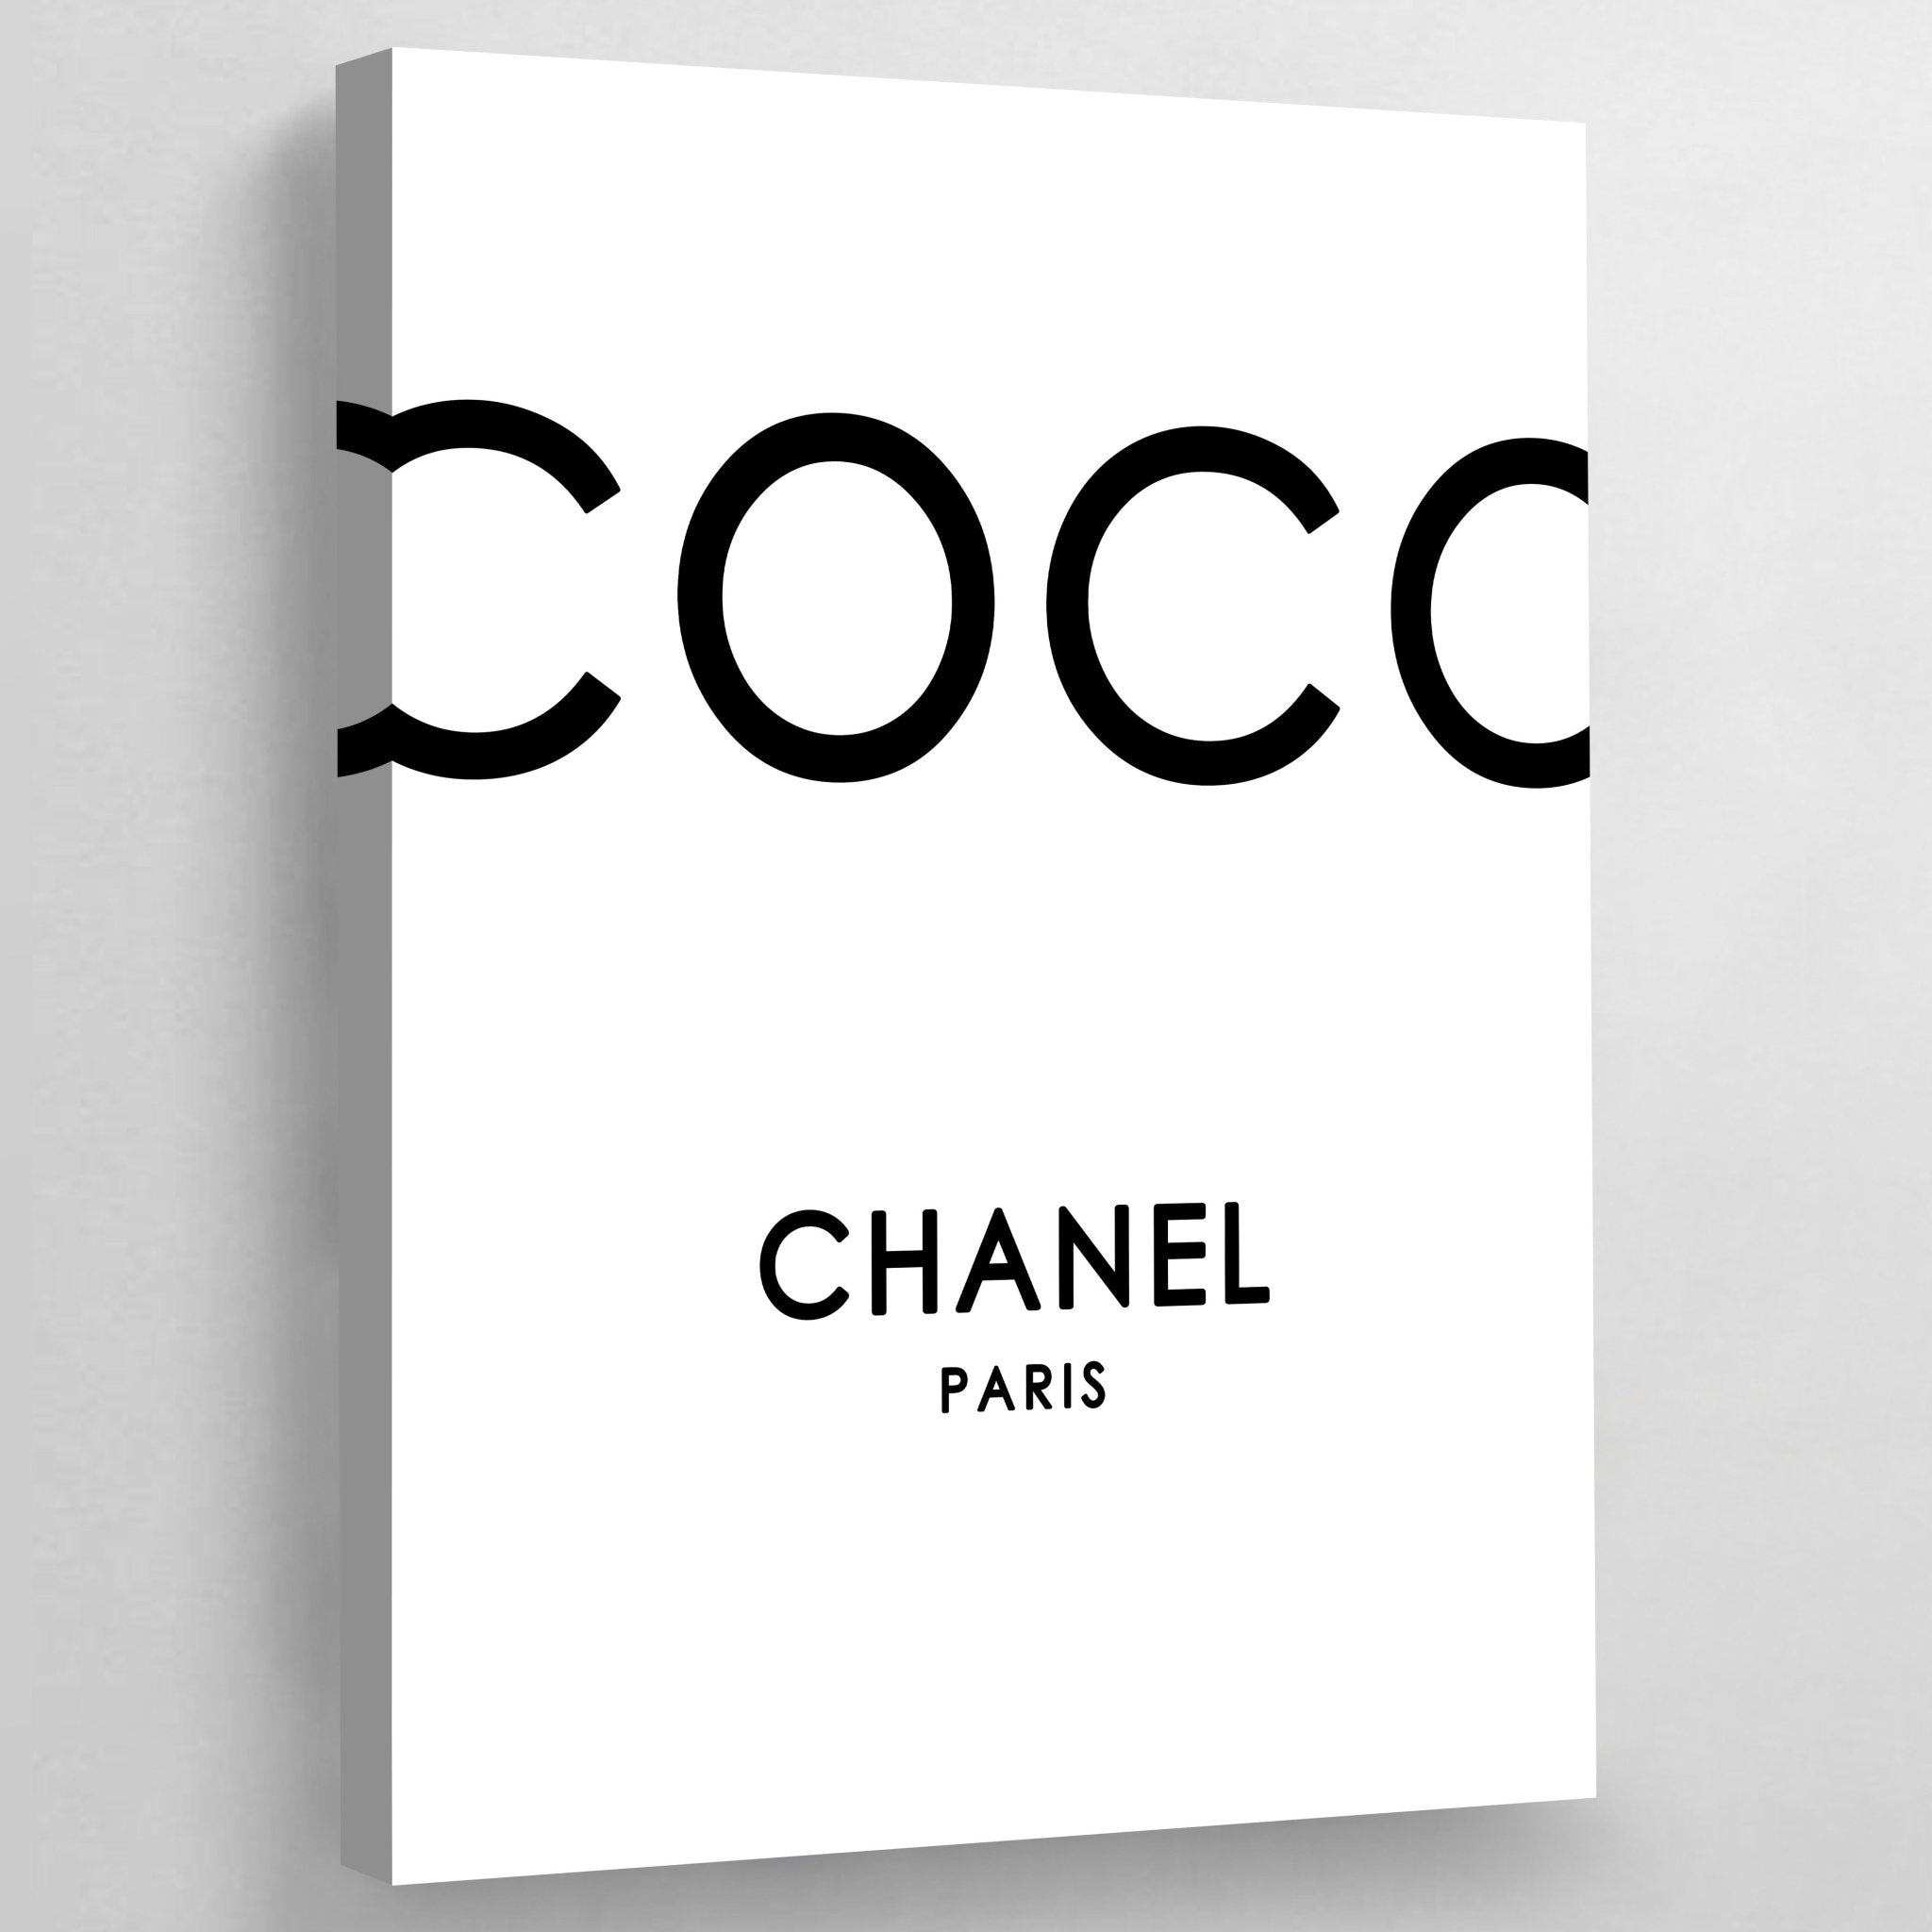 Décoration murale classique affiches vintage poster Coco Chanel cadres dorés